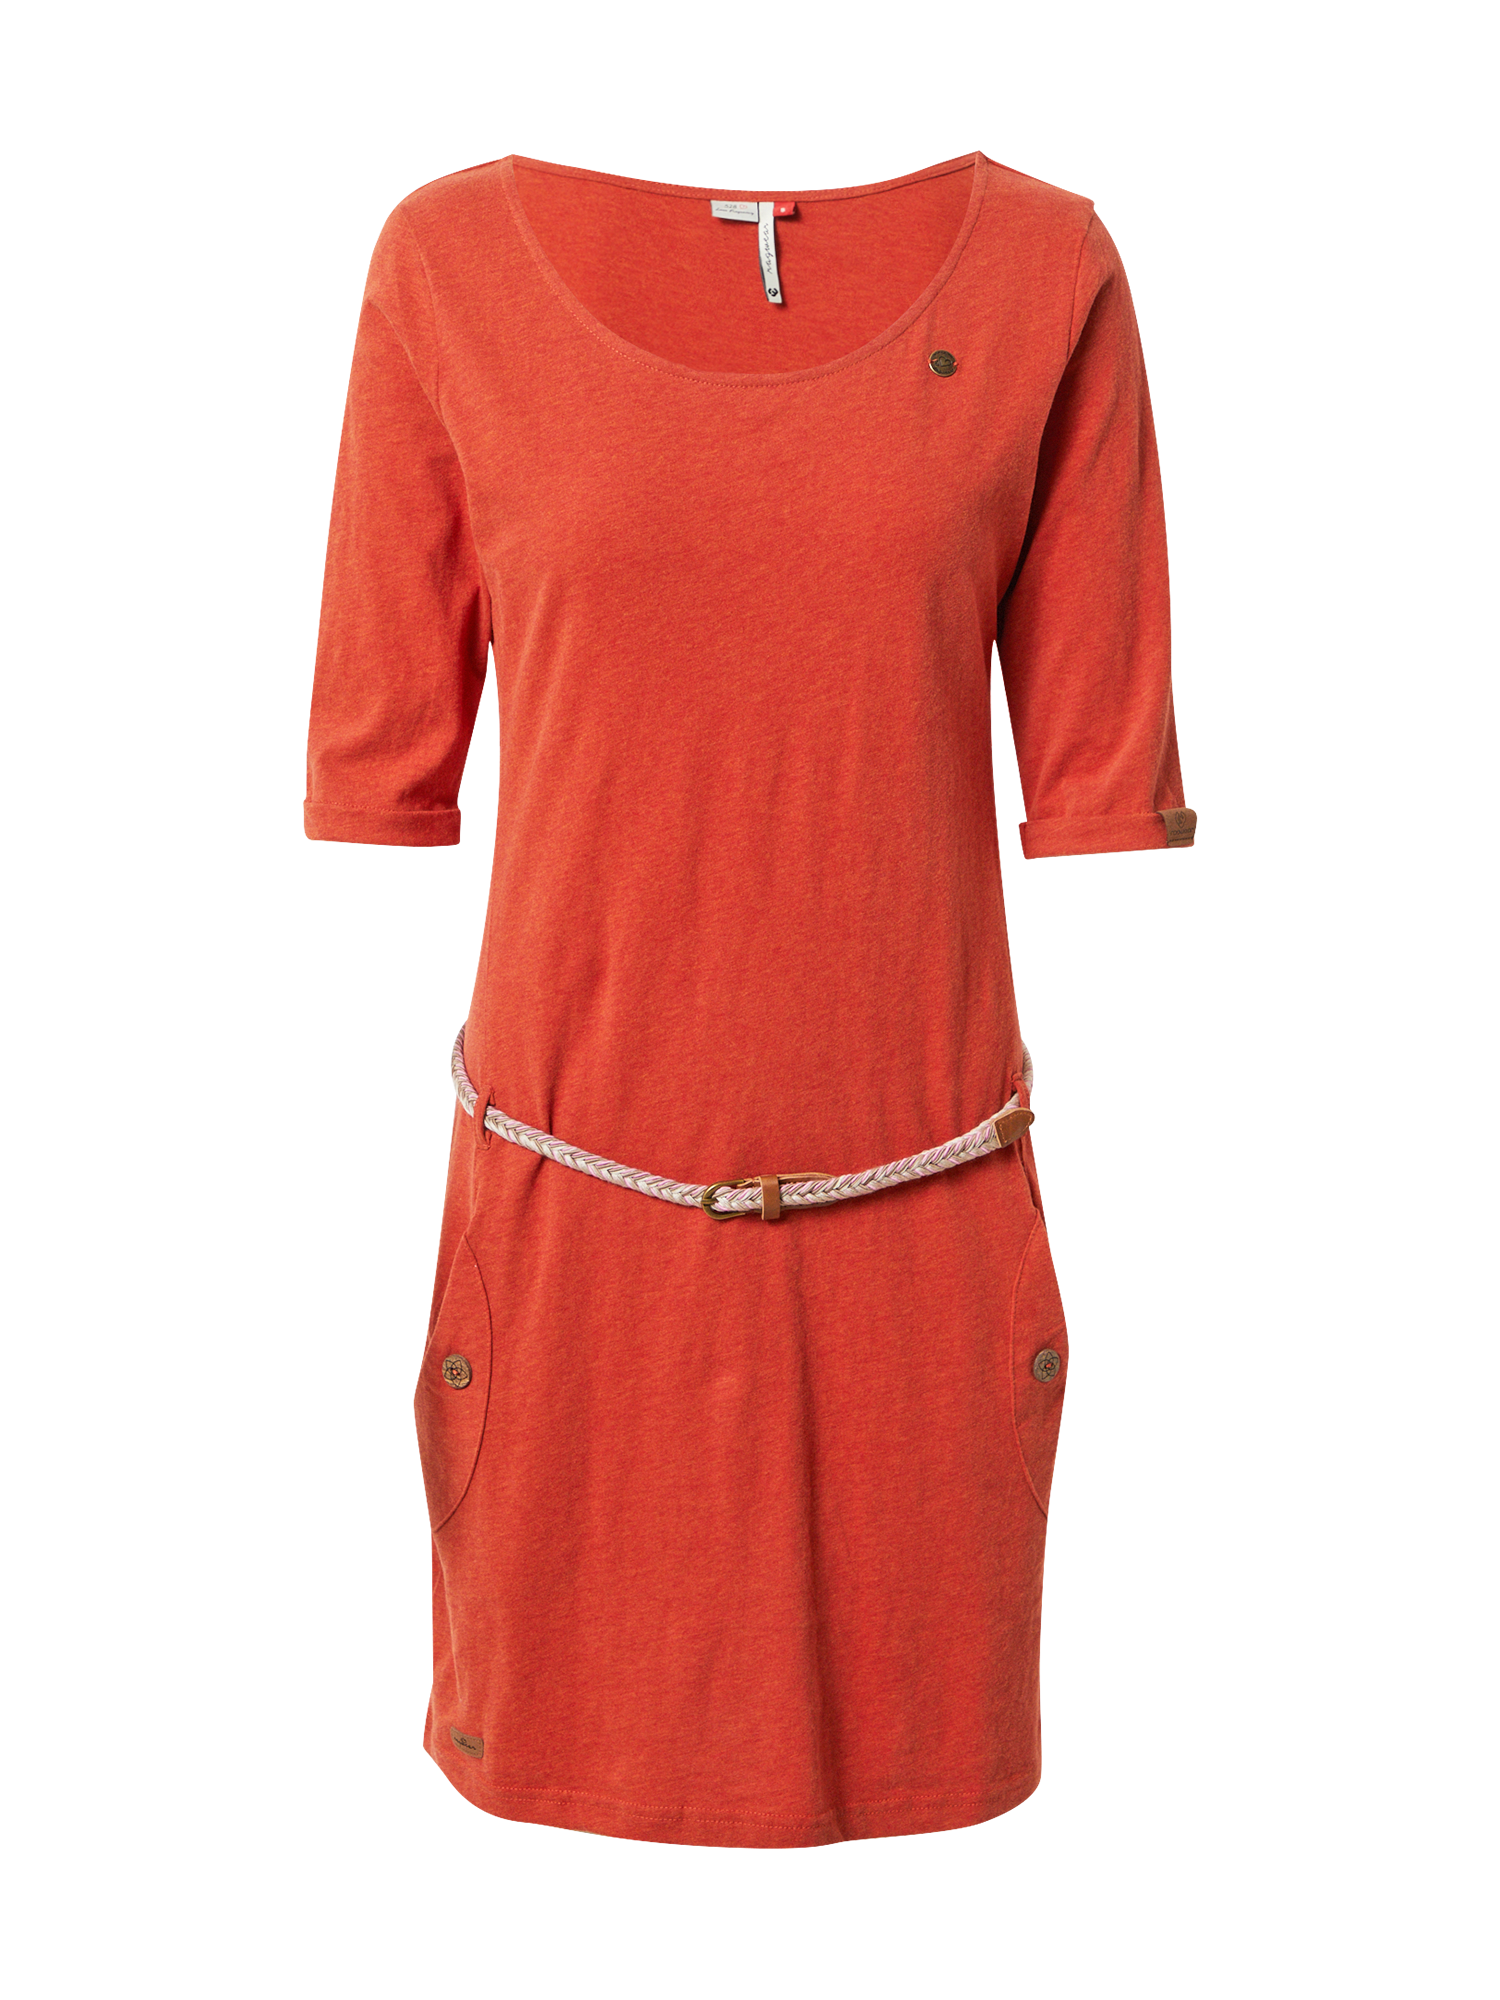 Odzież Kobiety Ragwear Sukienka TANYA w kolorze Mandarynkam 